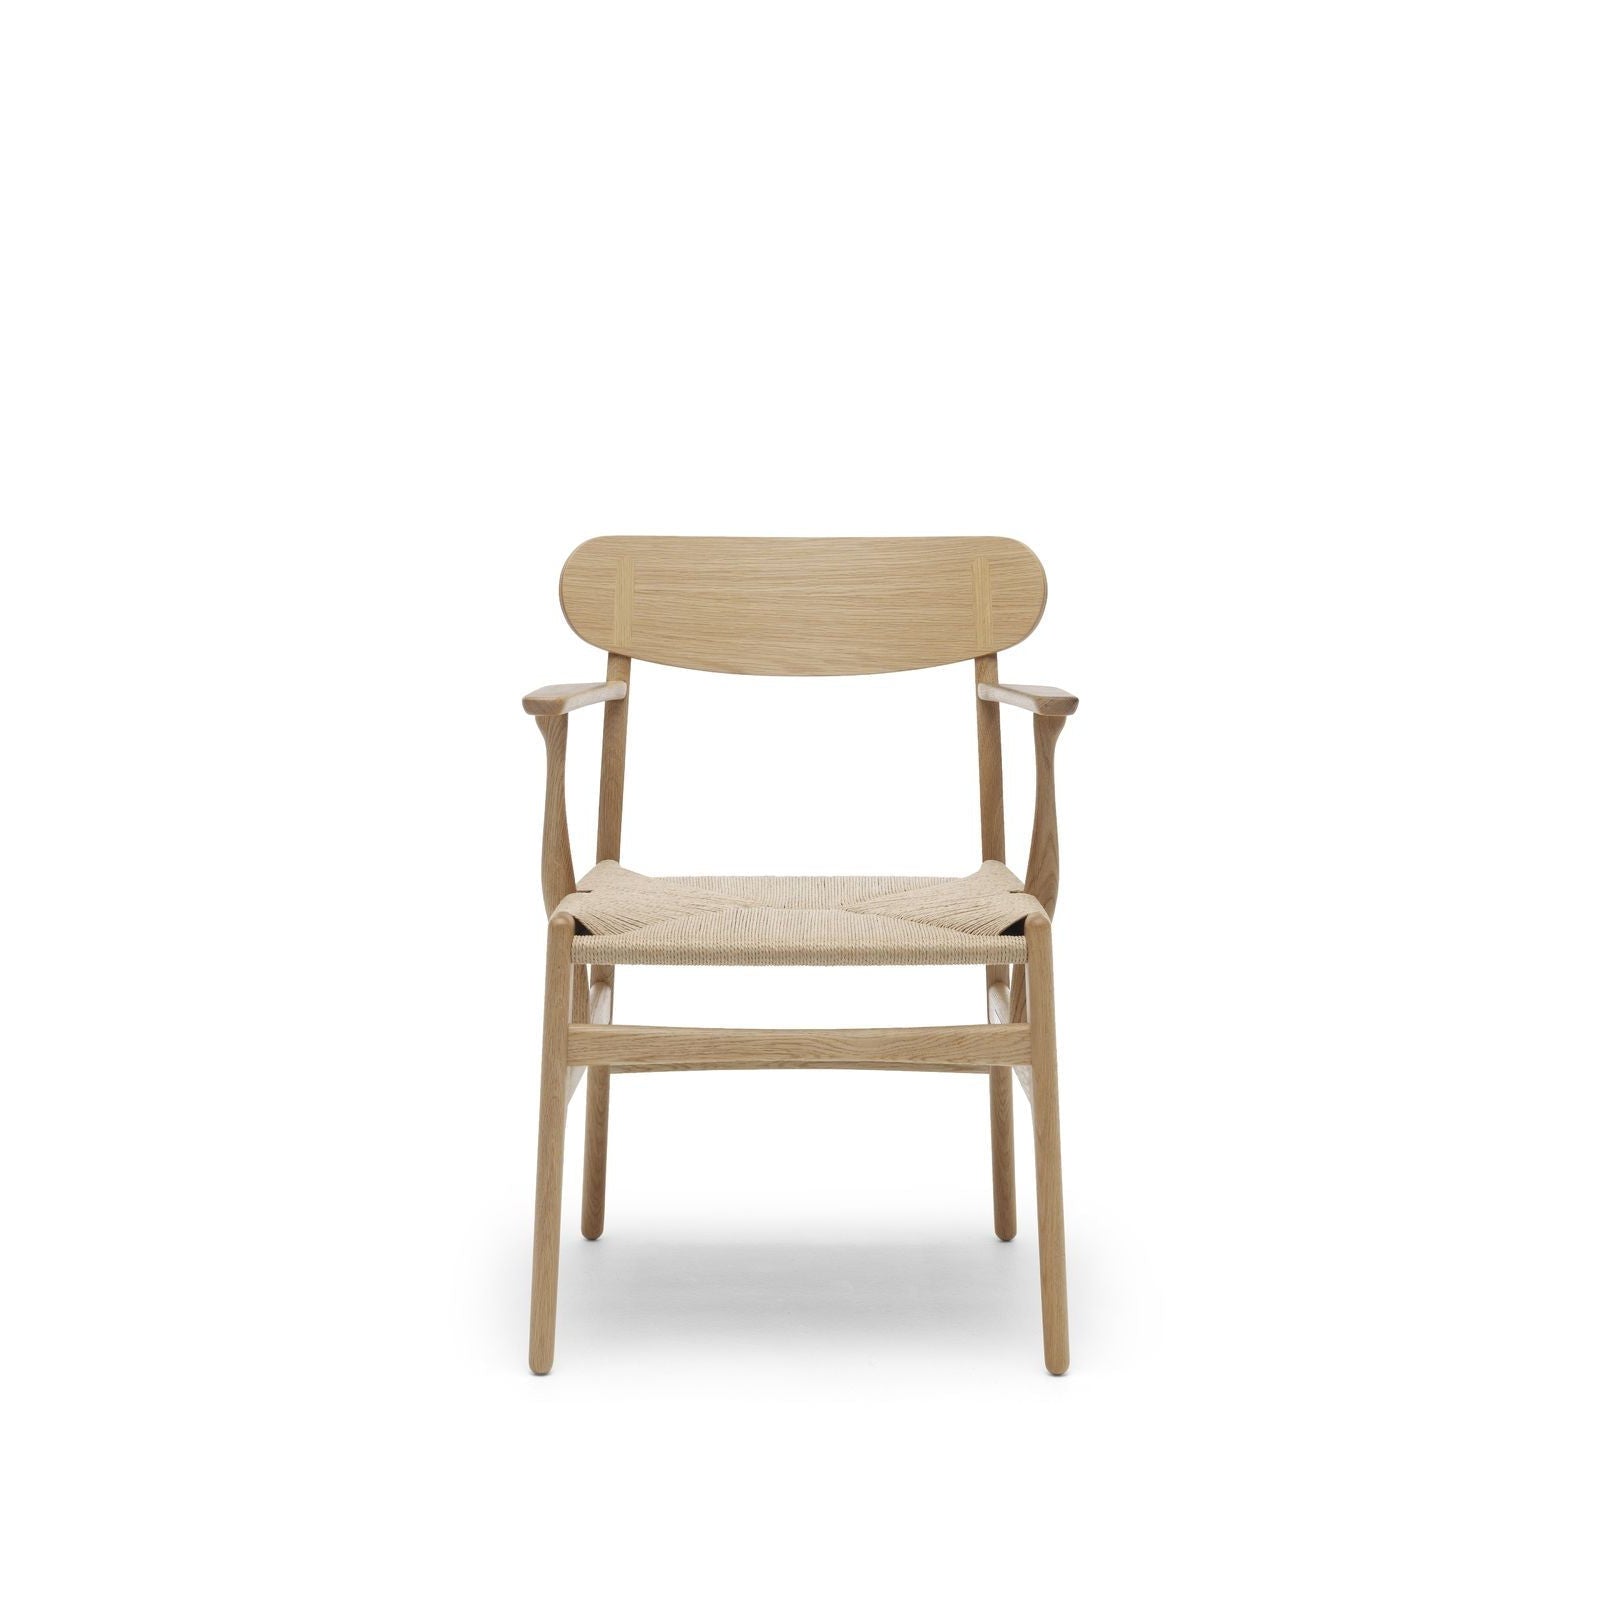 Carl Hansen Cushion For Ch26 Chair, Loke 7050